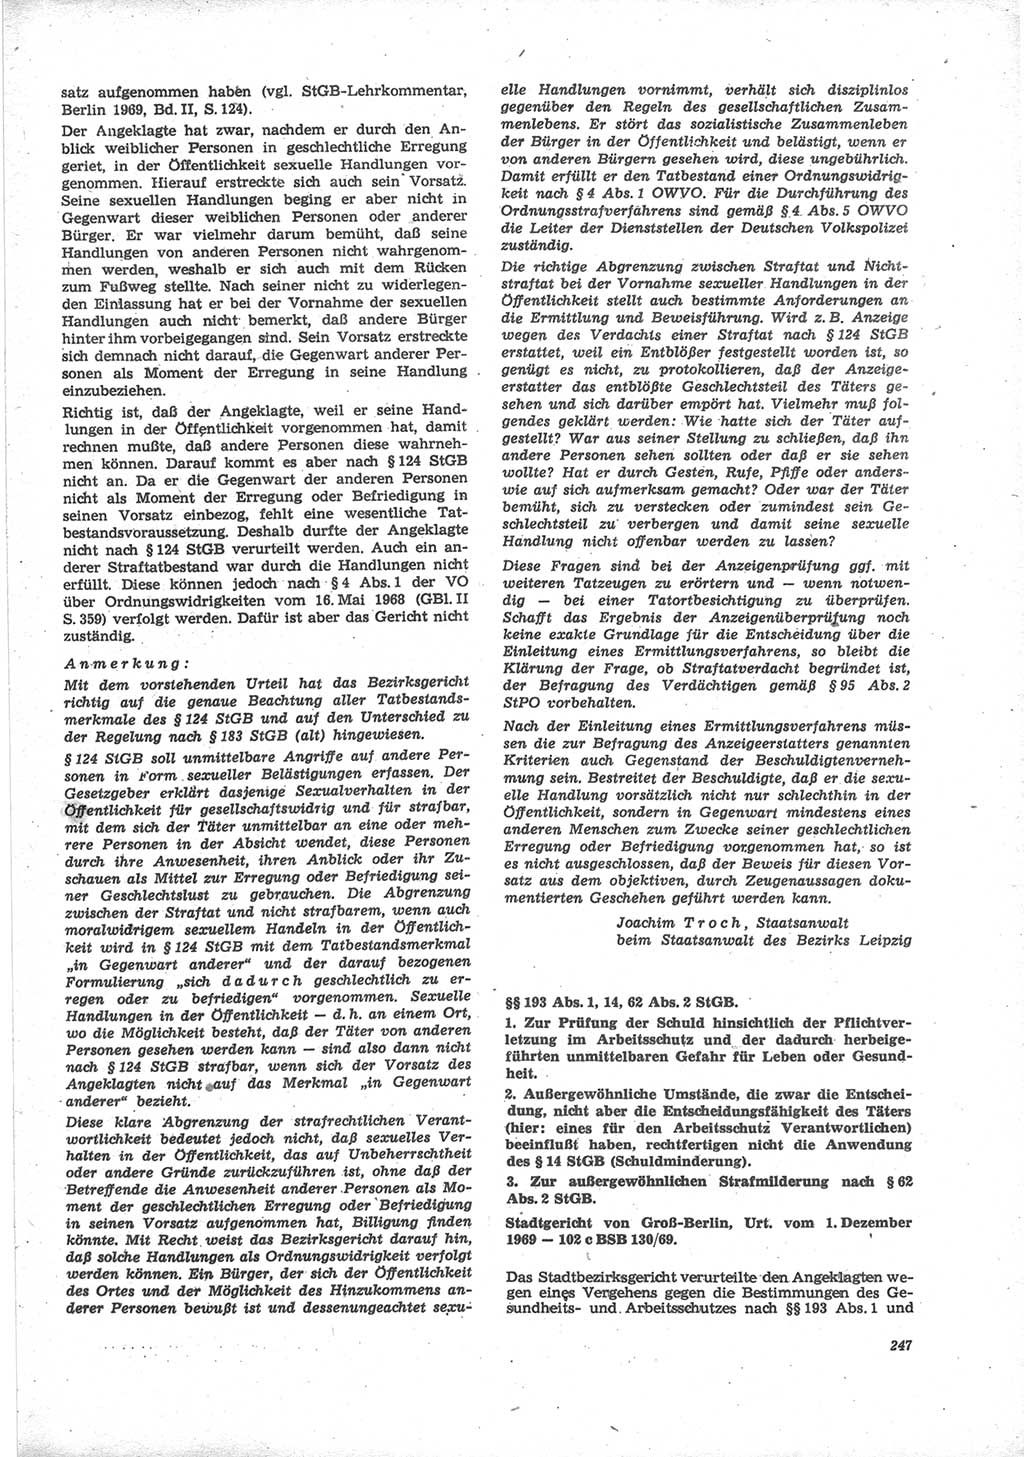 Neue Justiz (NJ), Zeitschrift für Recht und Rechtswissenschaft [Deutsche Demokratische Republik (DDR)], 24. Jahrgang 1970, Seite 247 (NJ DDR 1970, S. 247)